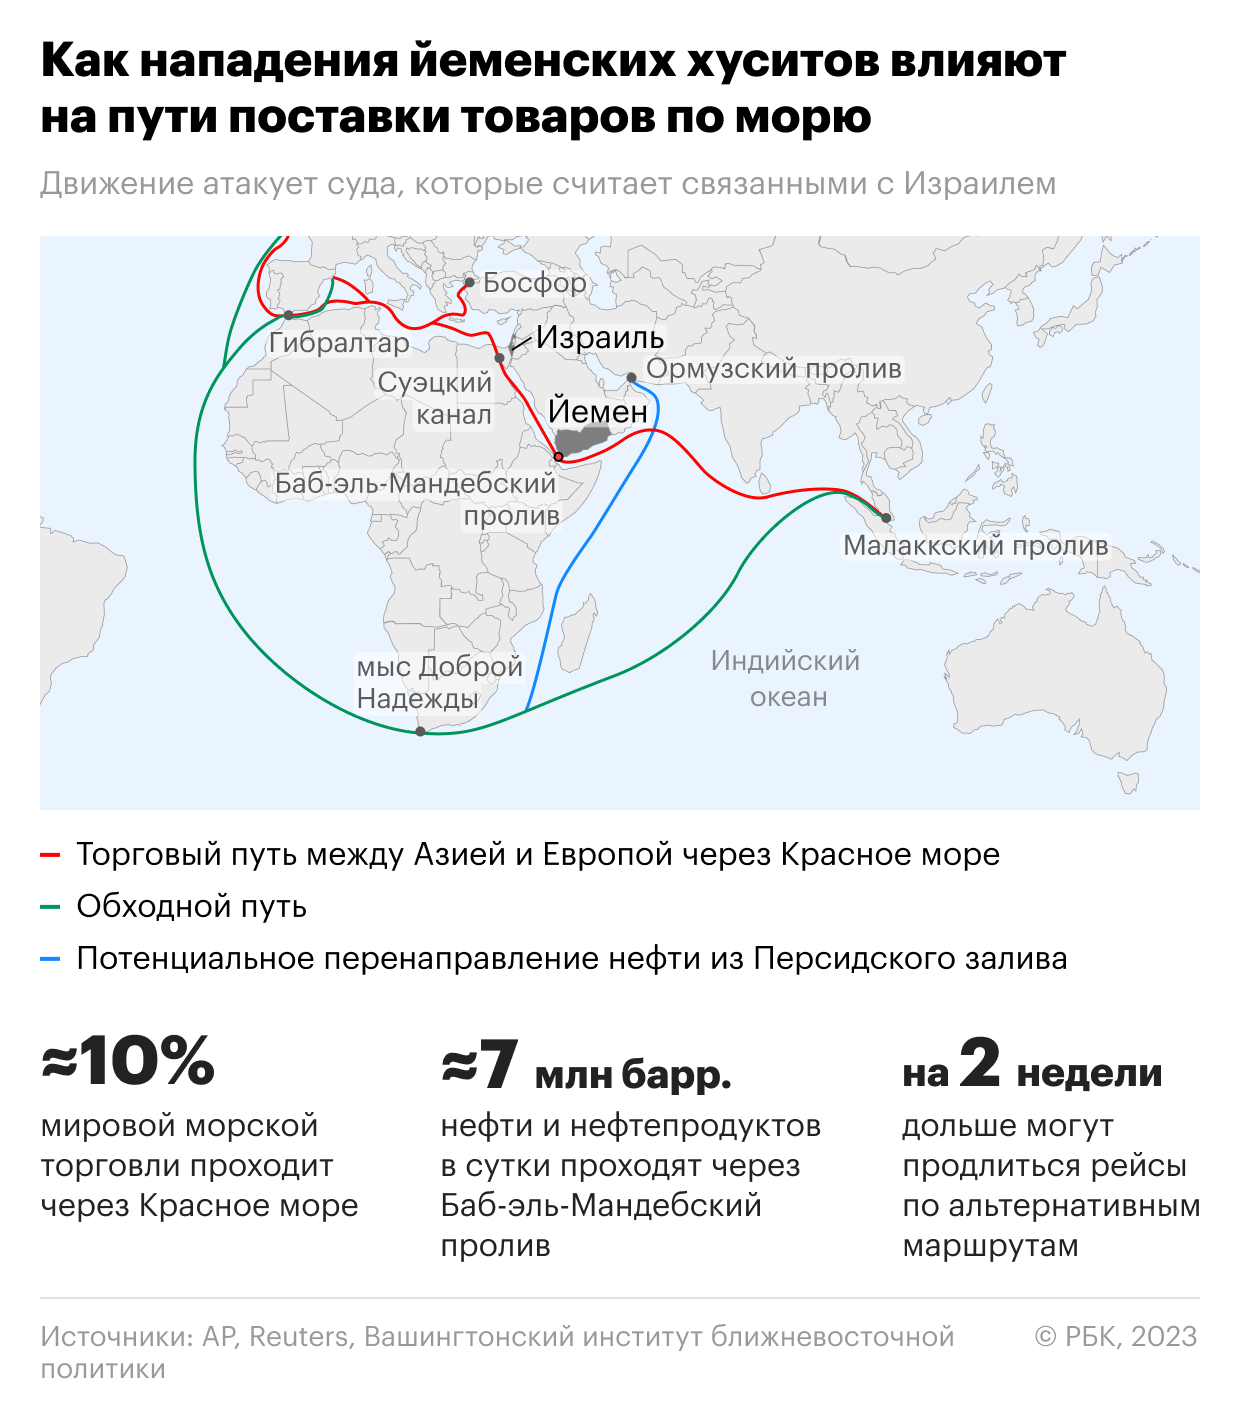 Атаки хуситов привели к буму перевозок по железным дорогам России